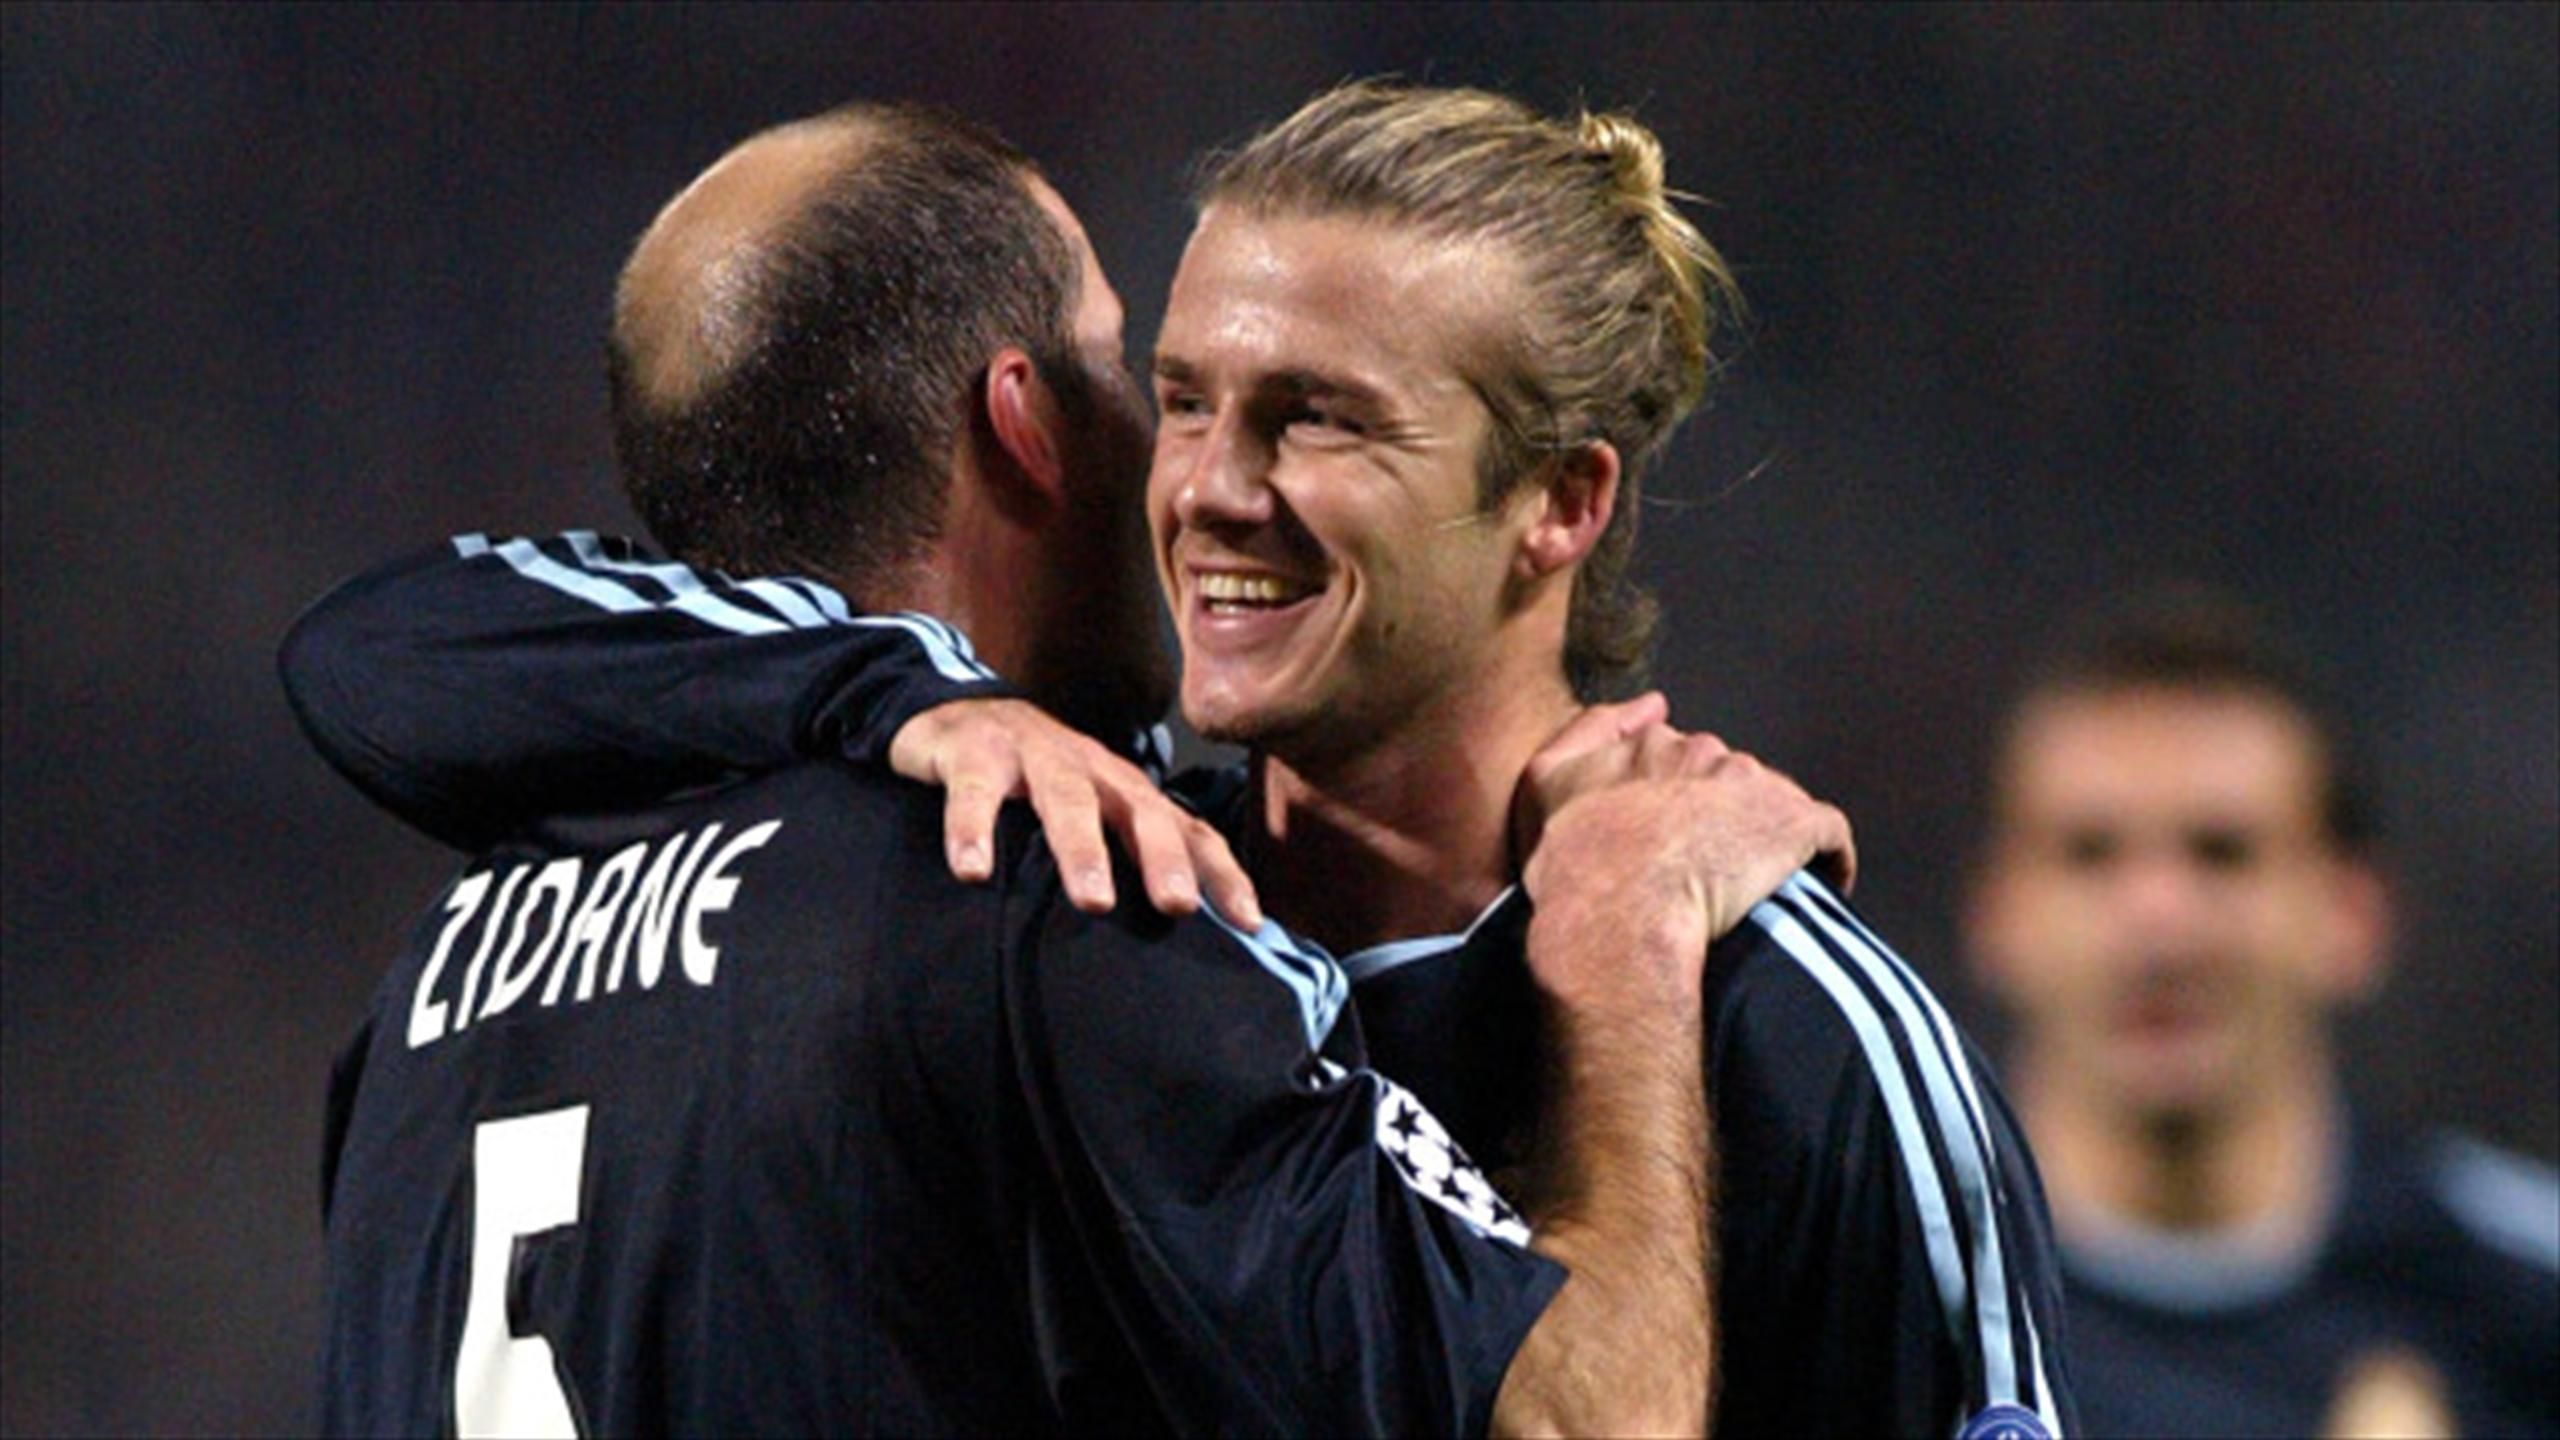 Zinedine Zidane: Cristiano Ronaldo and David Beckham in agreement